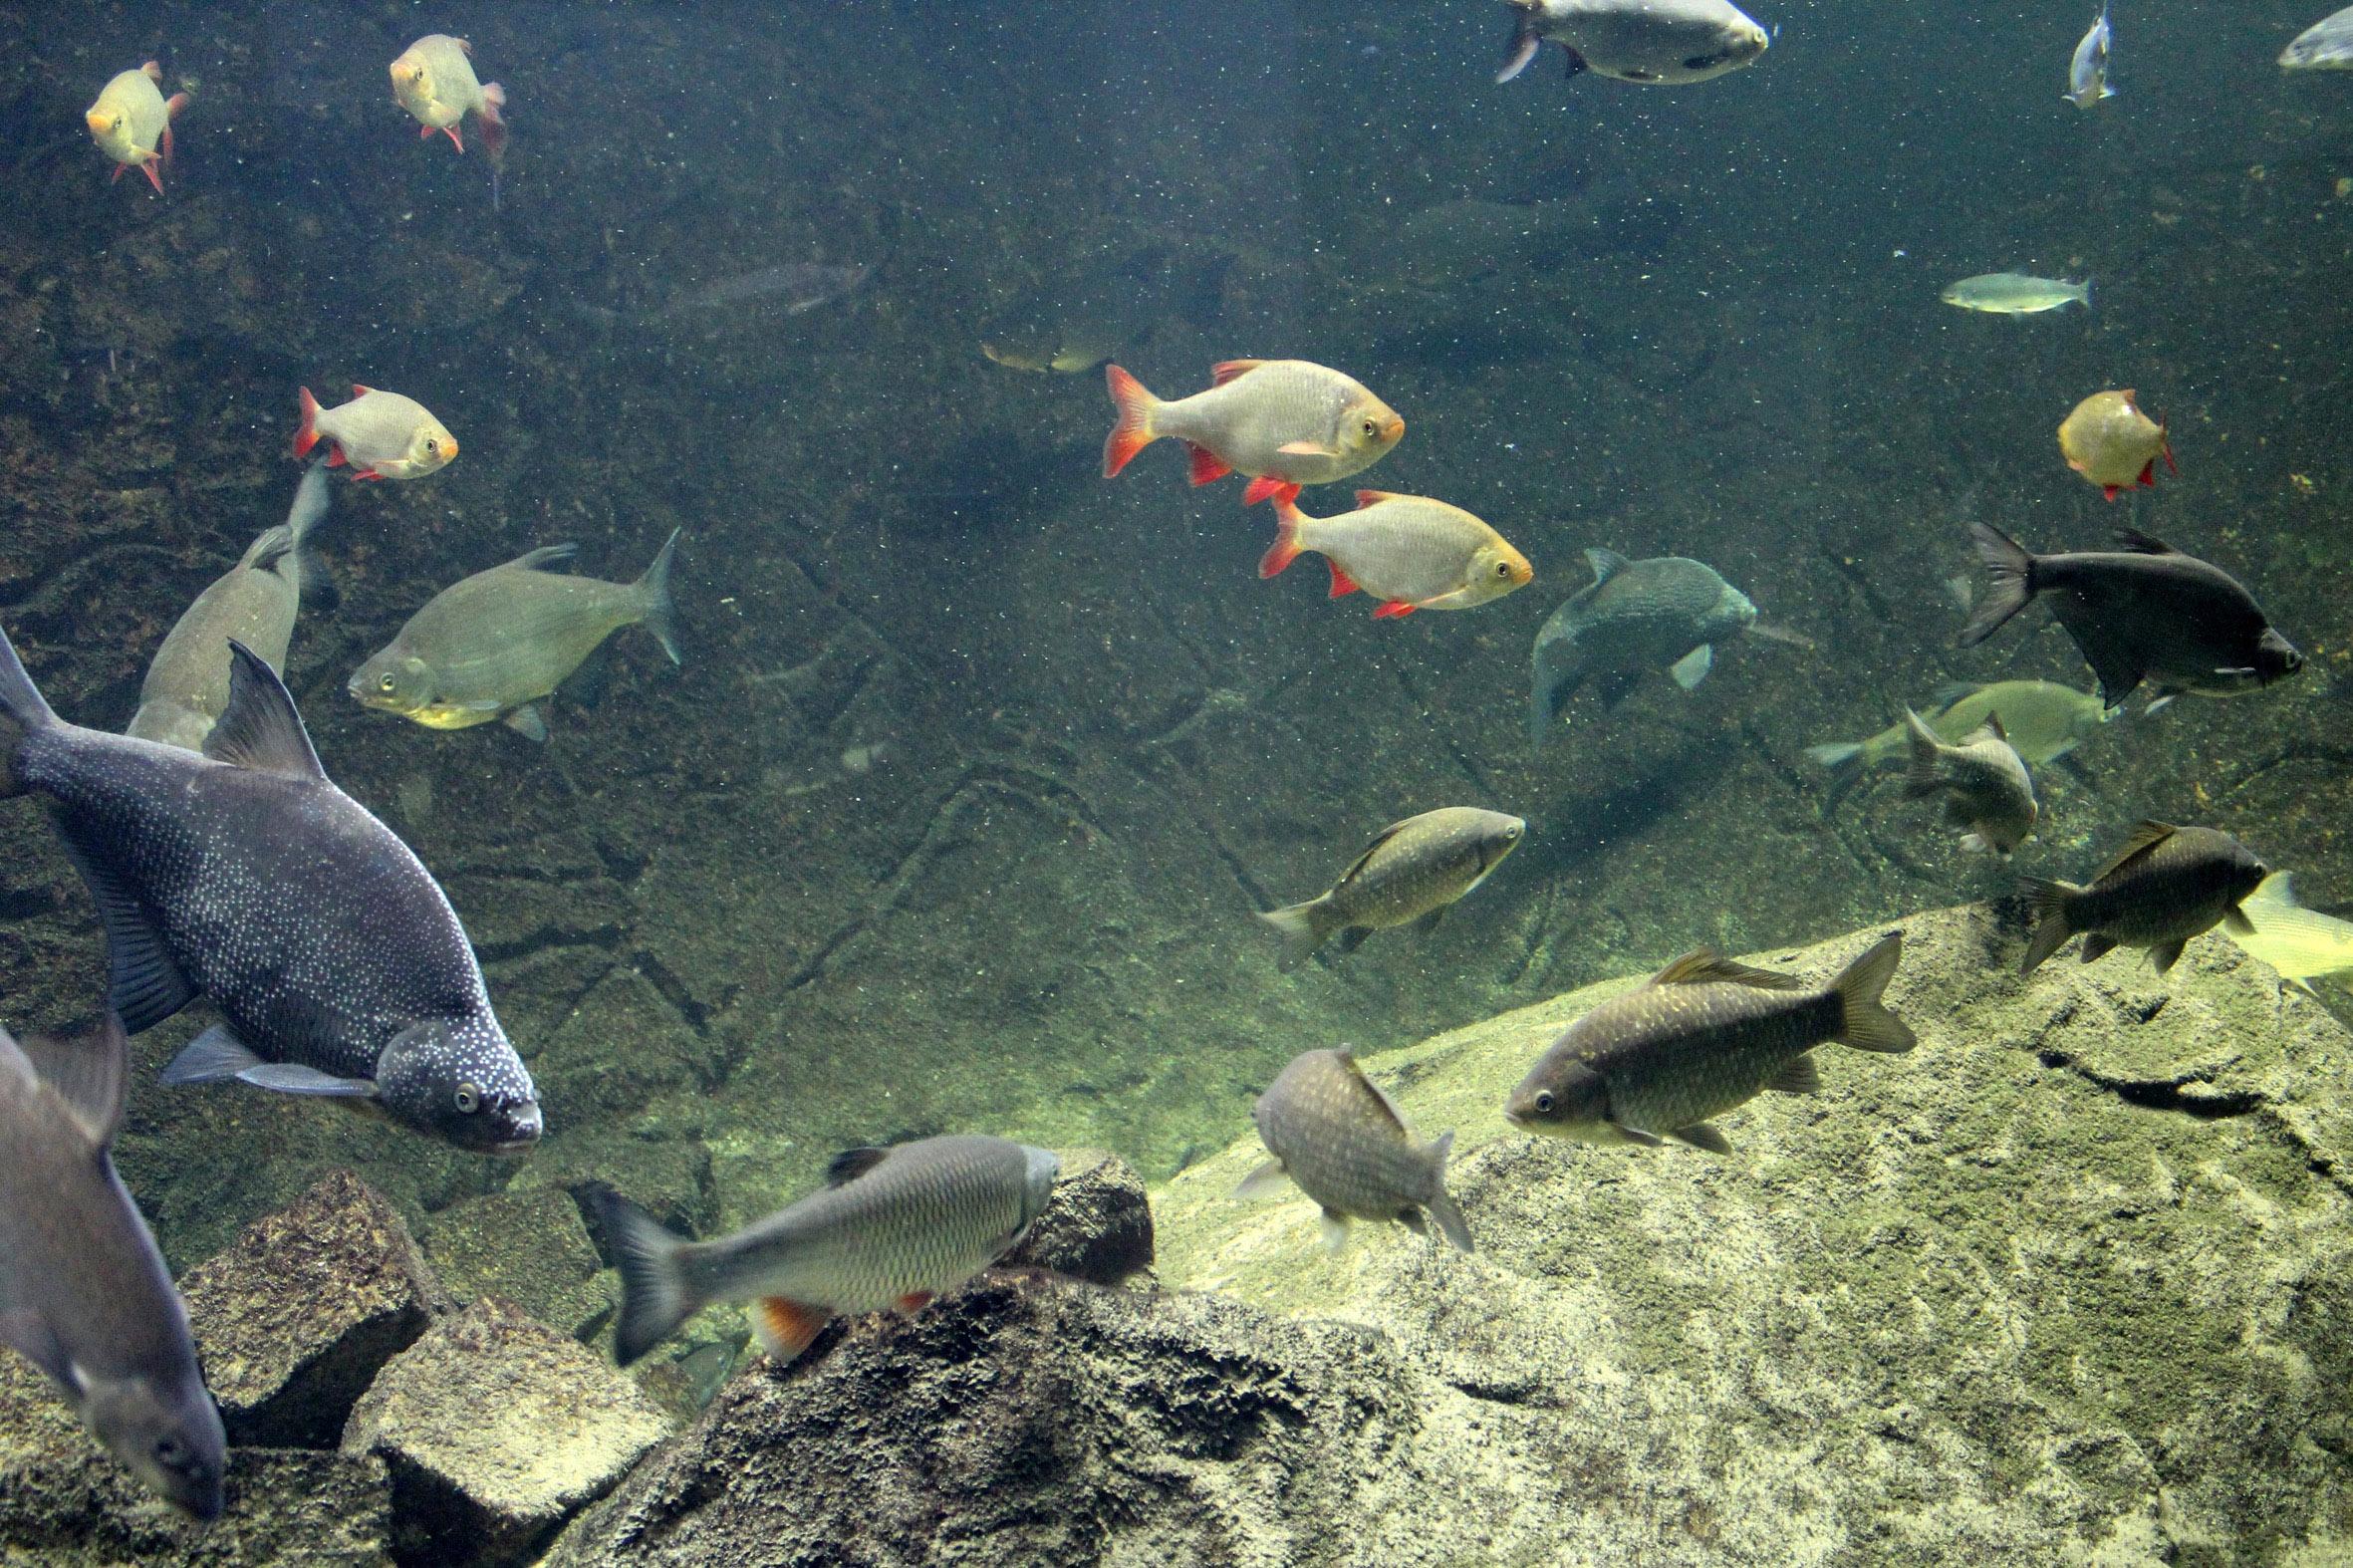 Biospherium Elbtalaue - Biber und Elbfische live erleben